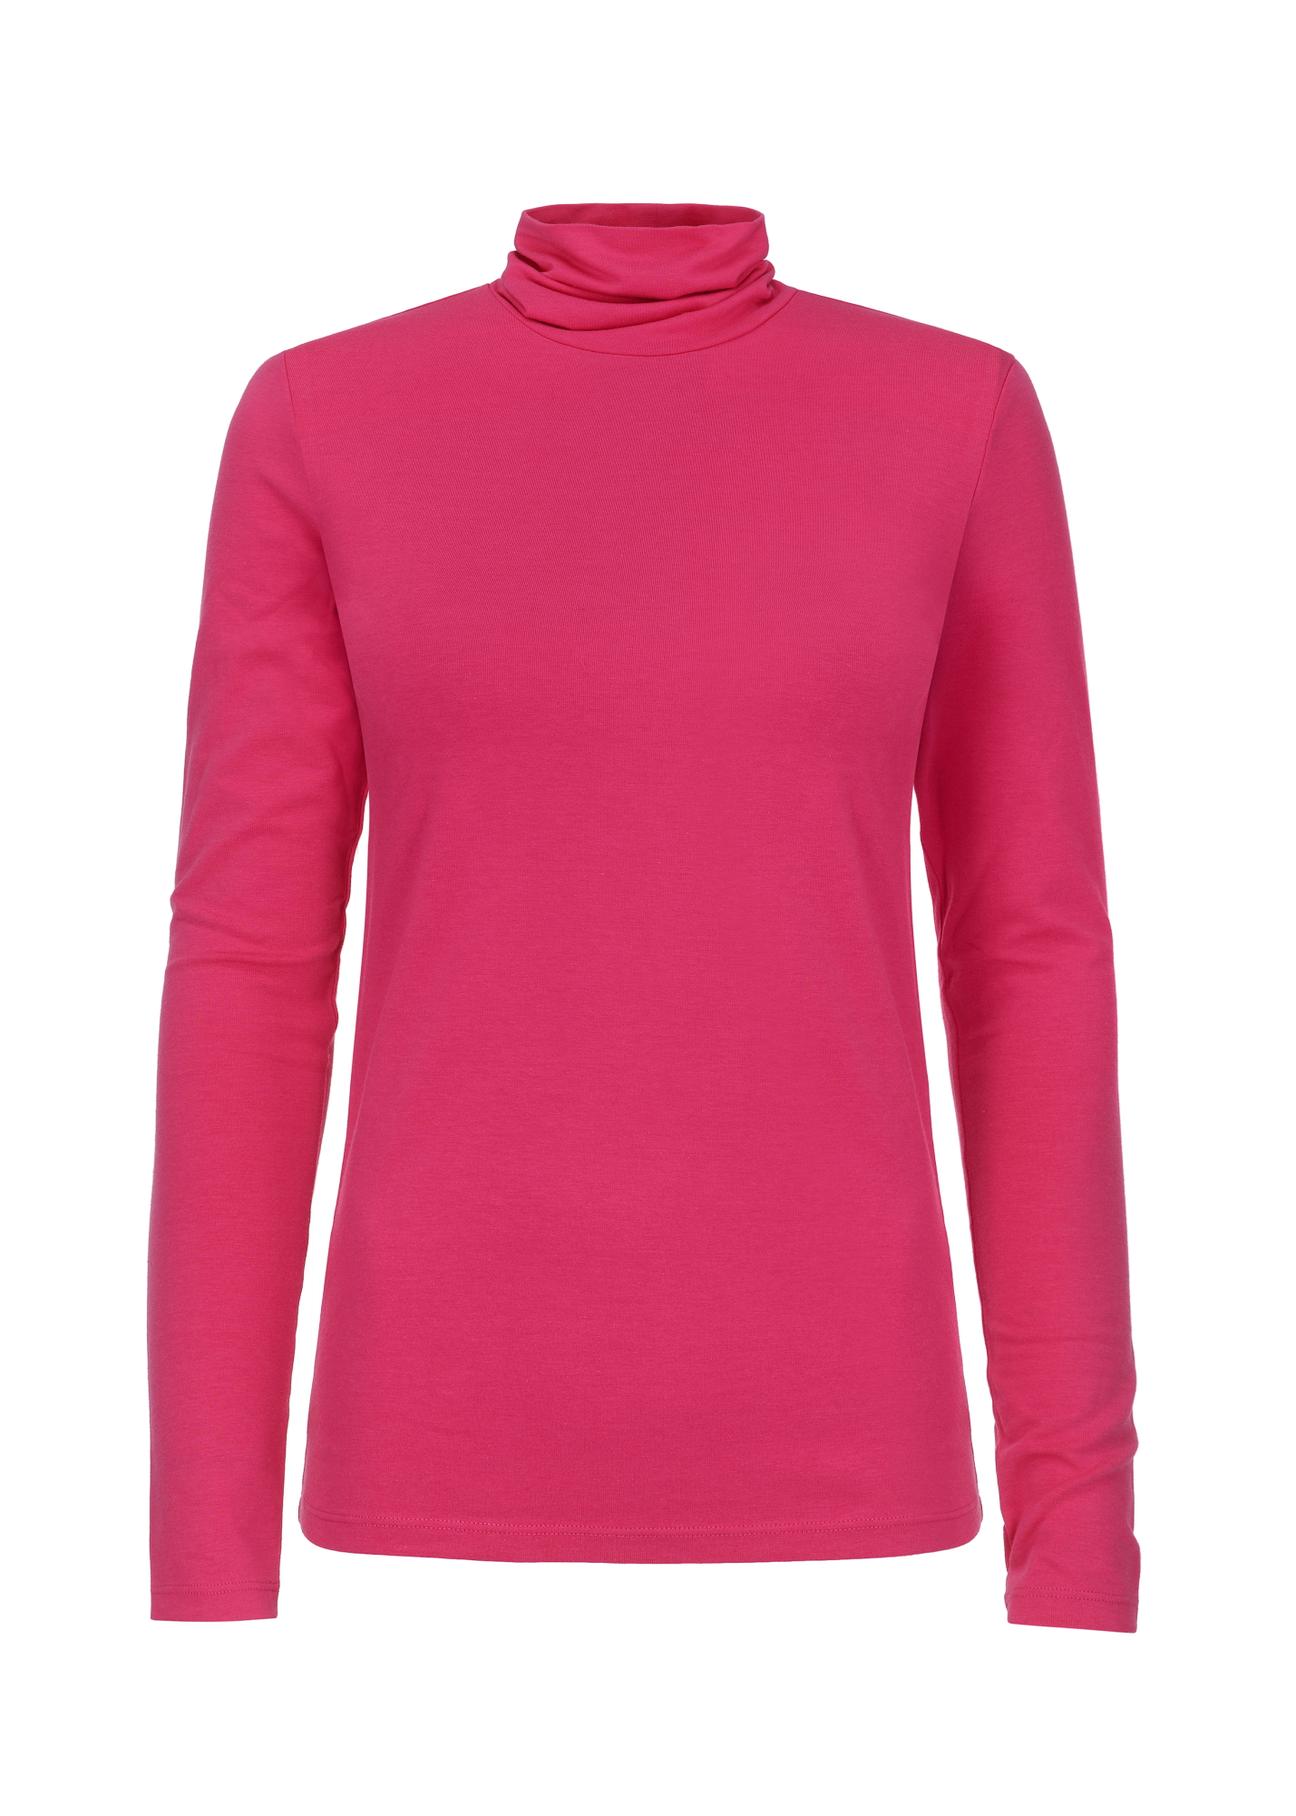 Różowa bluzka longsleeve damska z golfem LSLDT-0040-31(Z23)